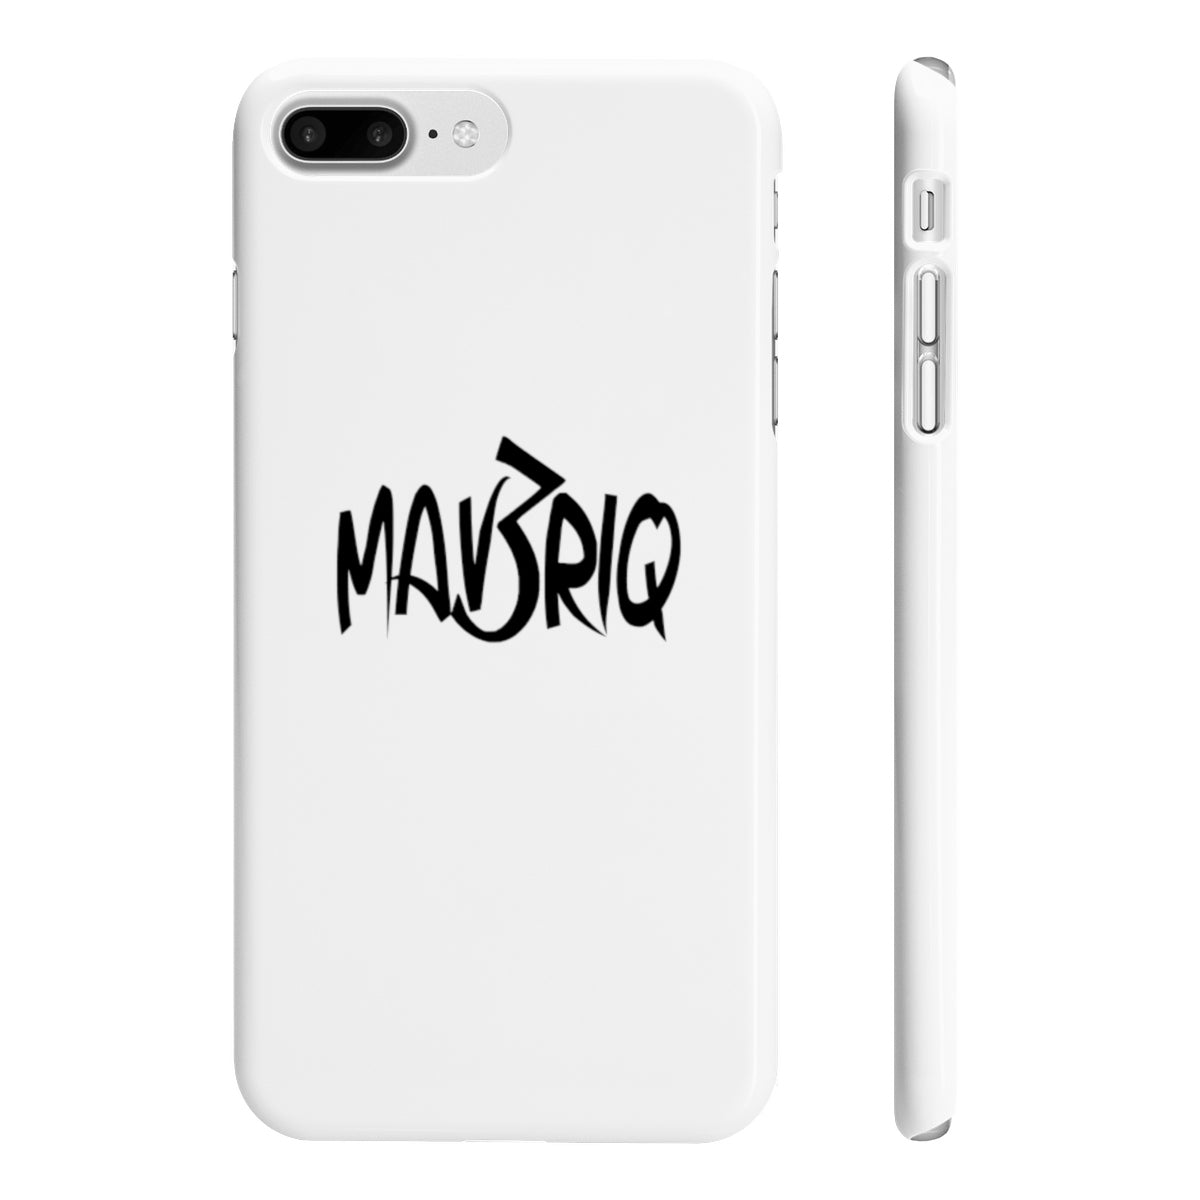 White MAV3RIQ Phone Case